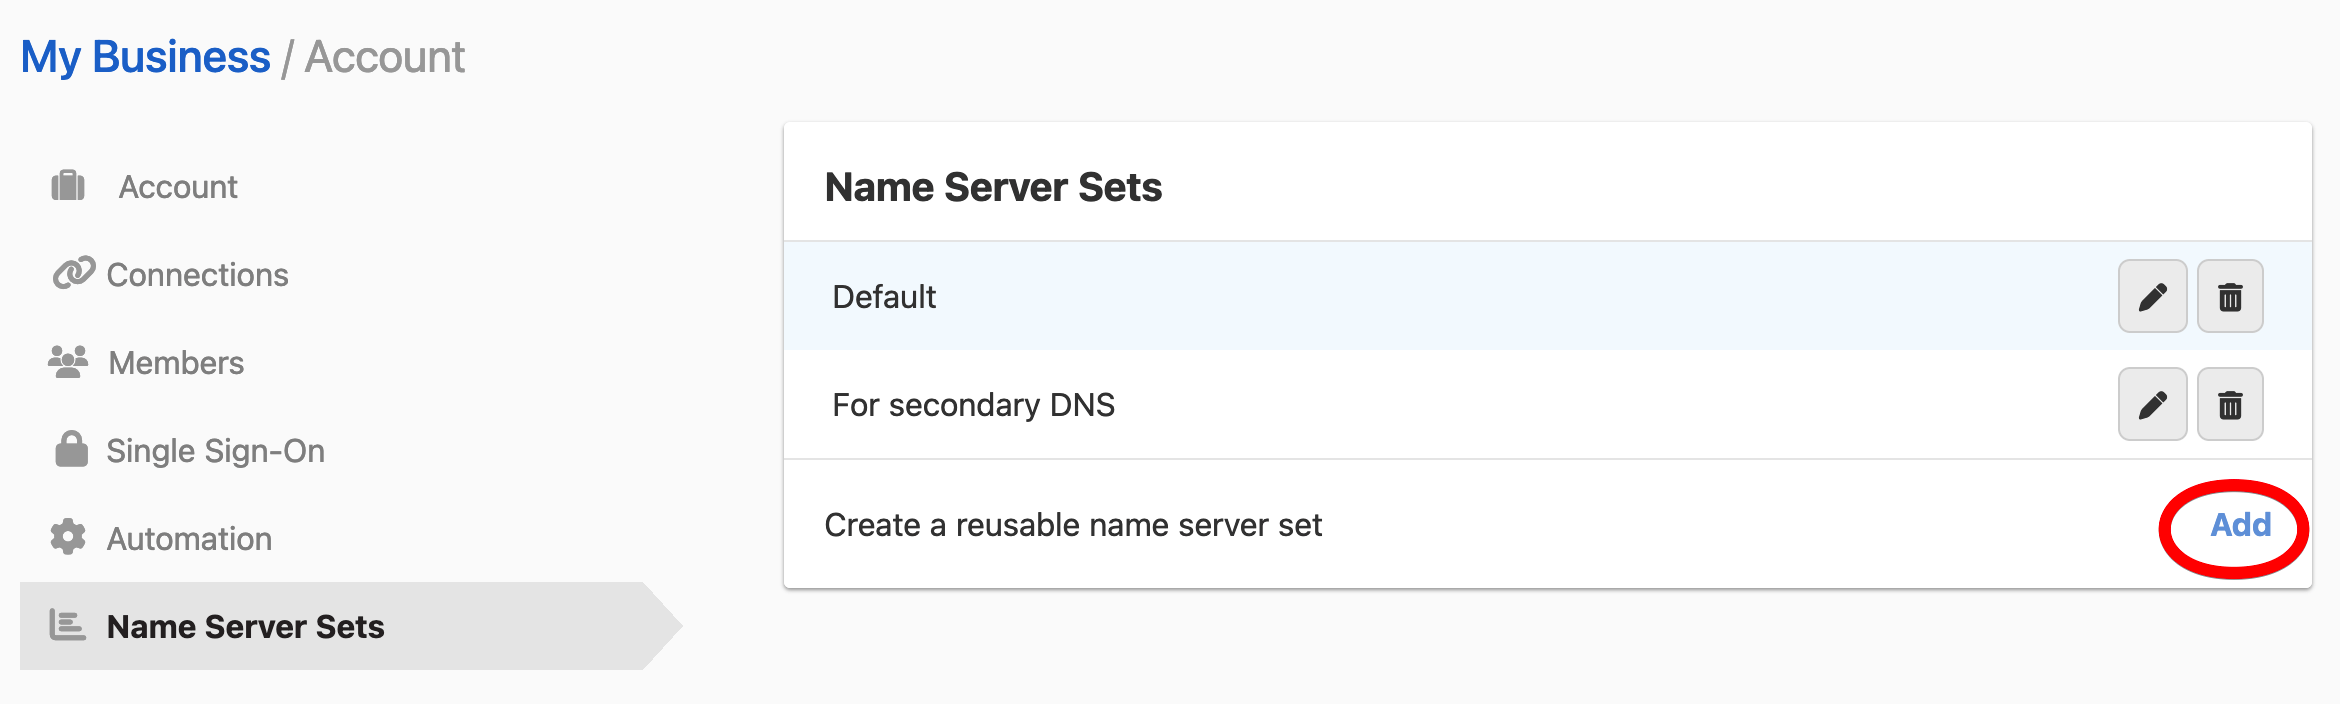 Adding a name server set